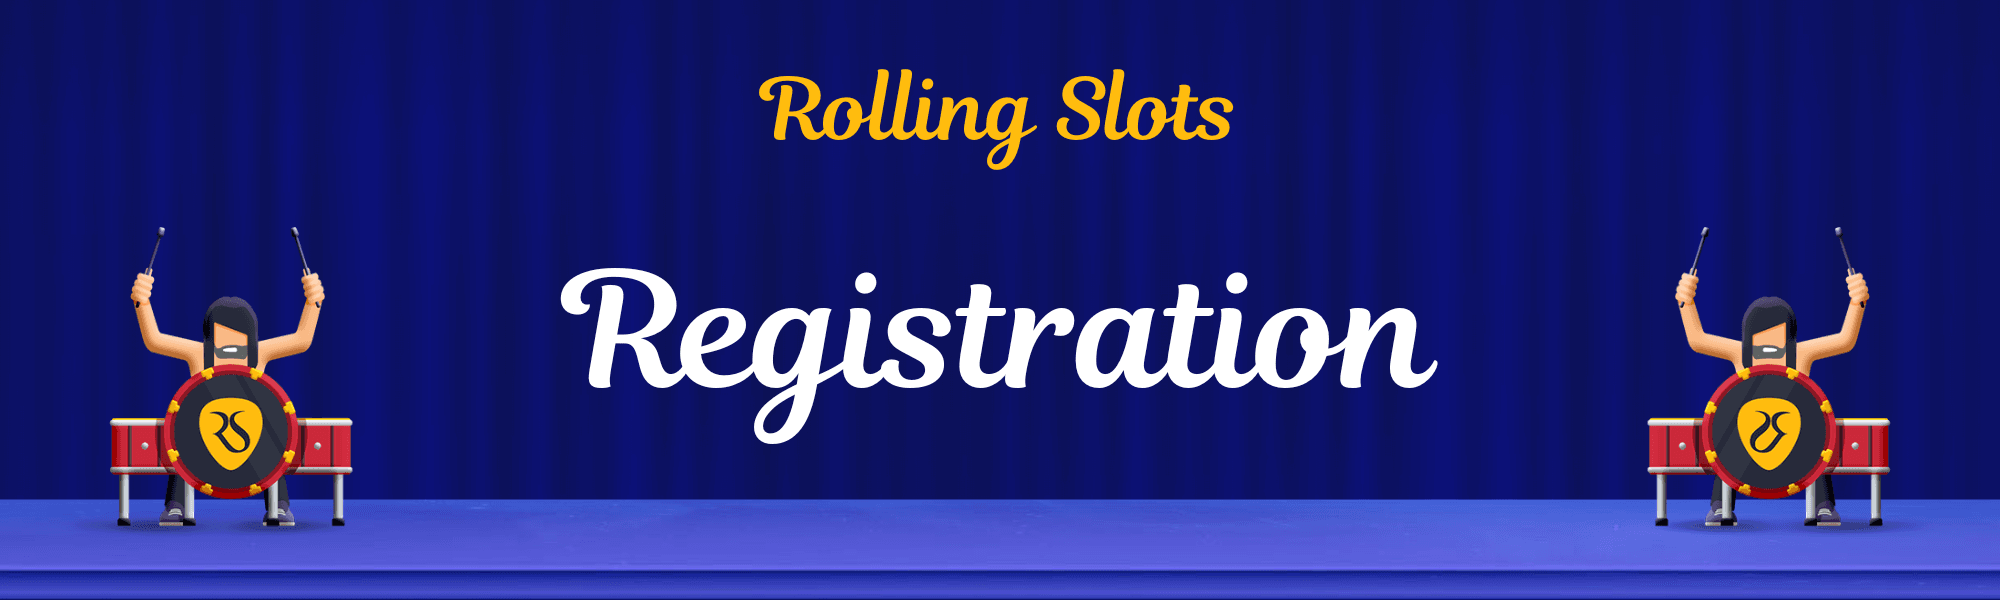 Rolling Slots Registration.png